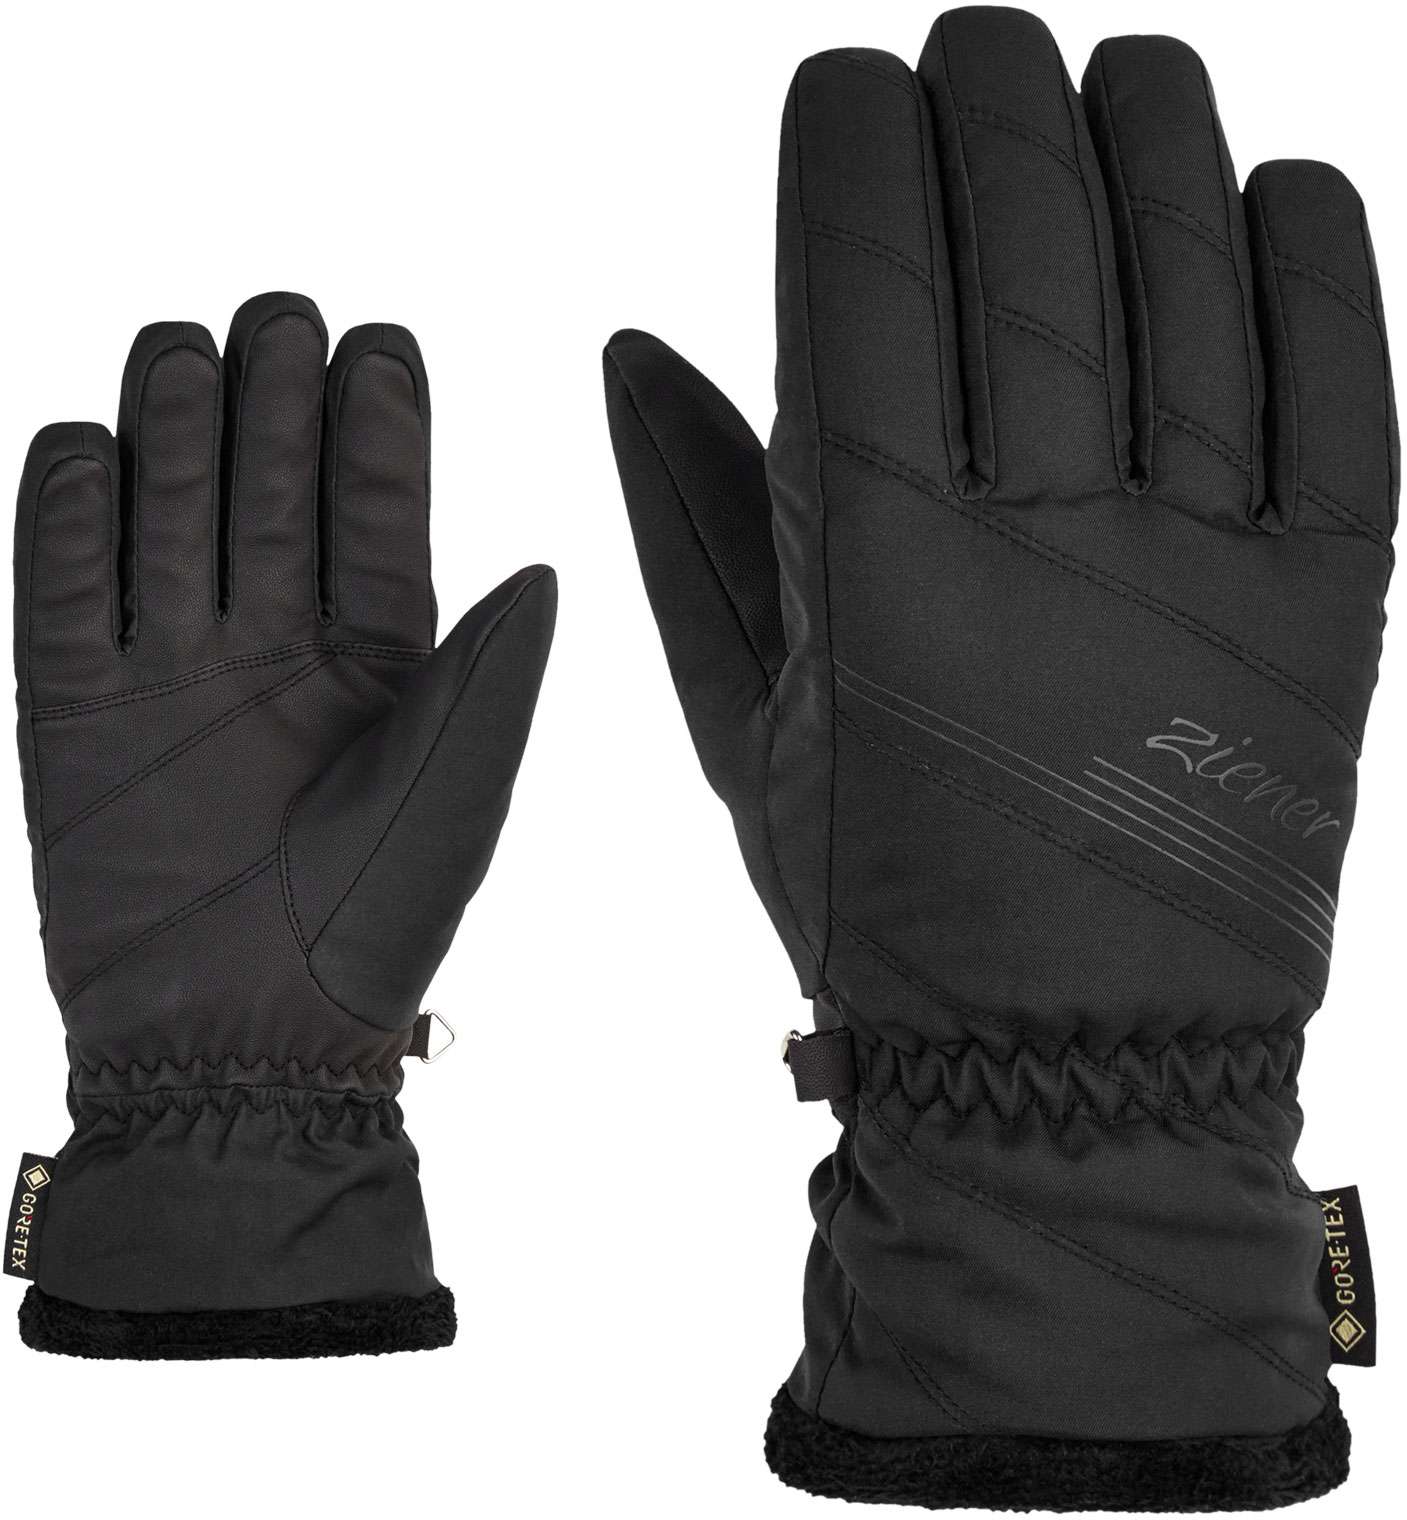 ZIENER Kasia GTX lady glove, black